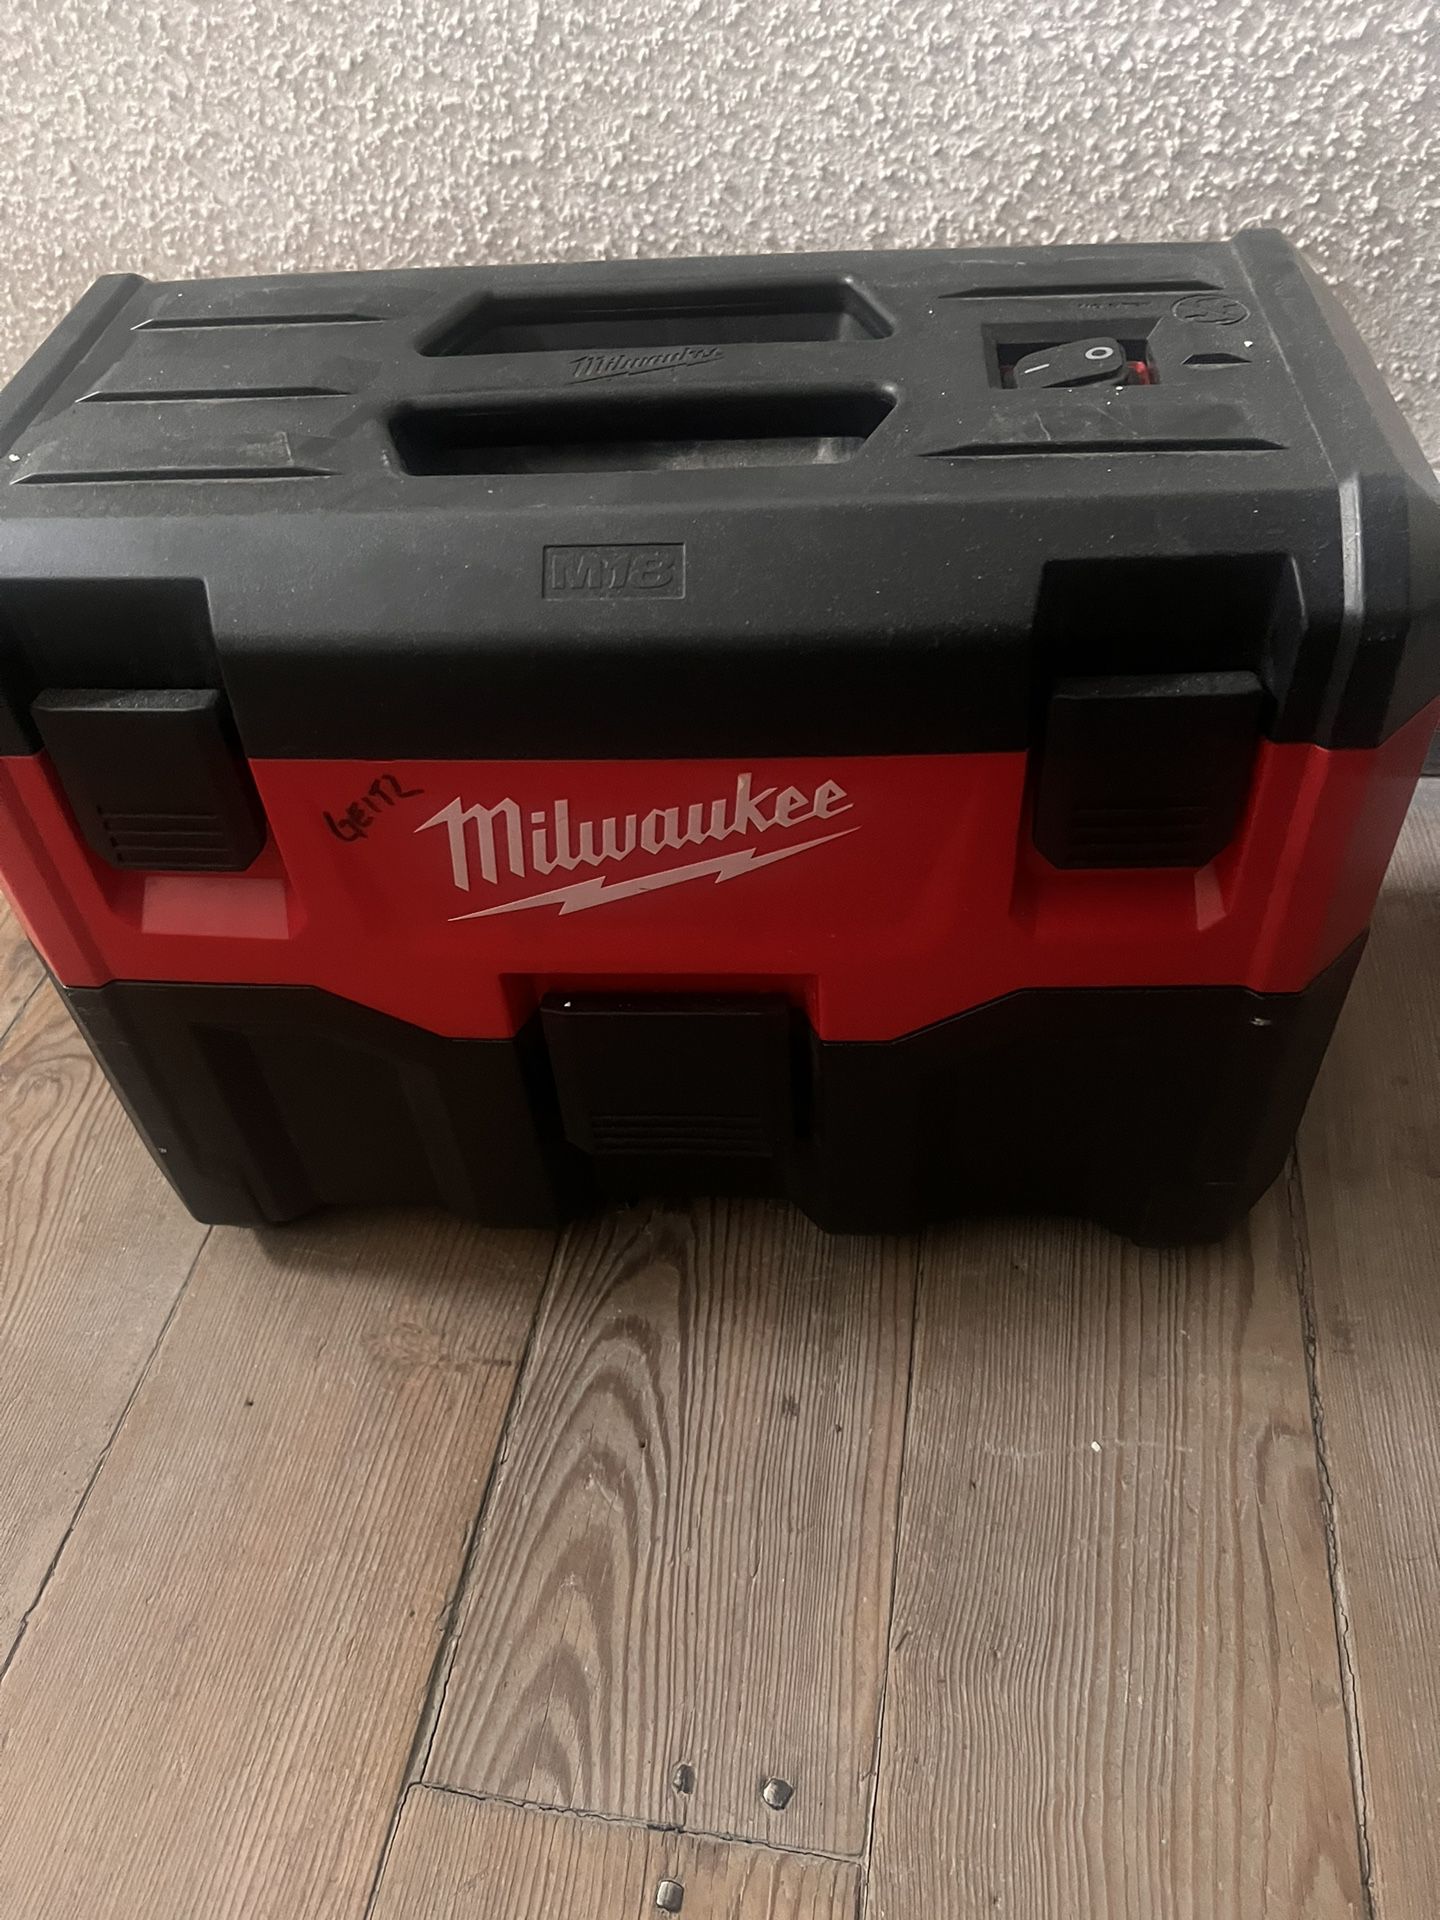 Milwaukee  vacuum